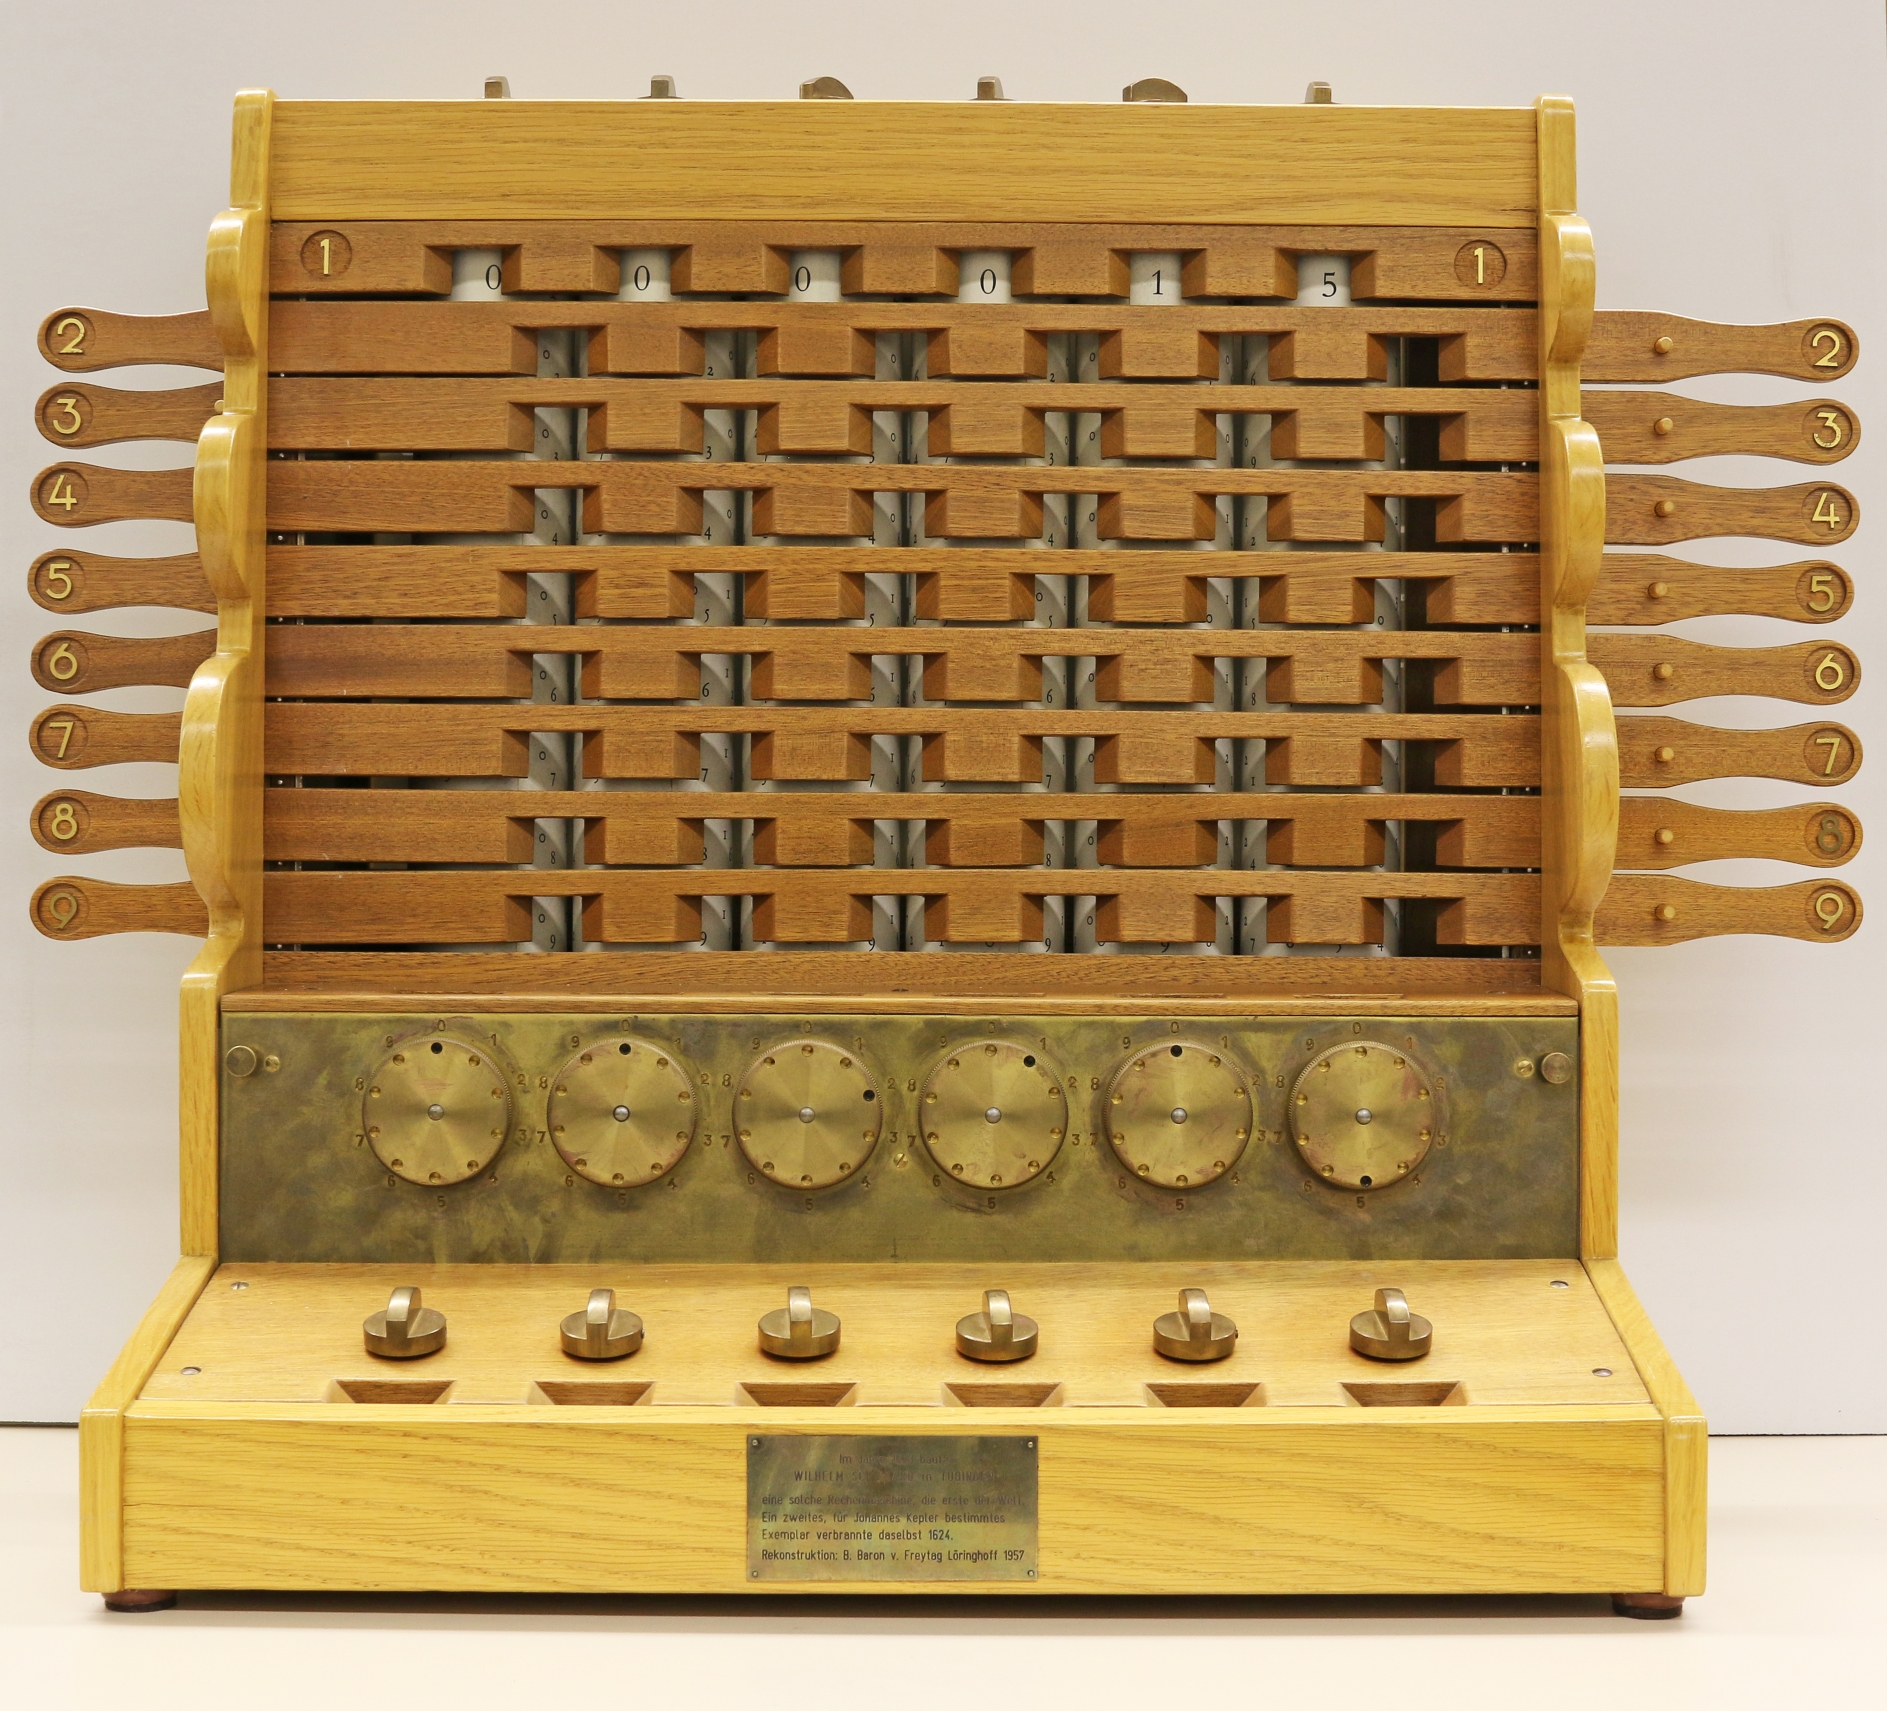 Die erste mechanische Rechenmaschine der Welt wurde 1623 von Wilhelm Schickard konstruiert, verfügte über einen automatischen Zehnerübertrag und war für Addition und Subtraktion geeignet.